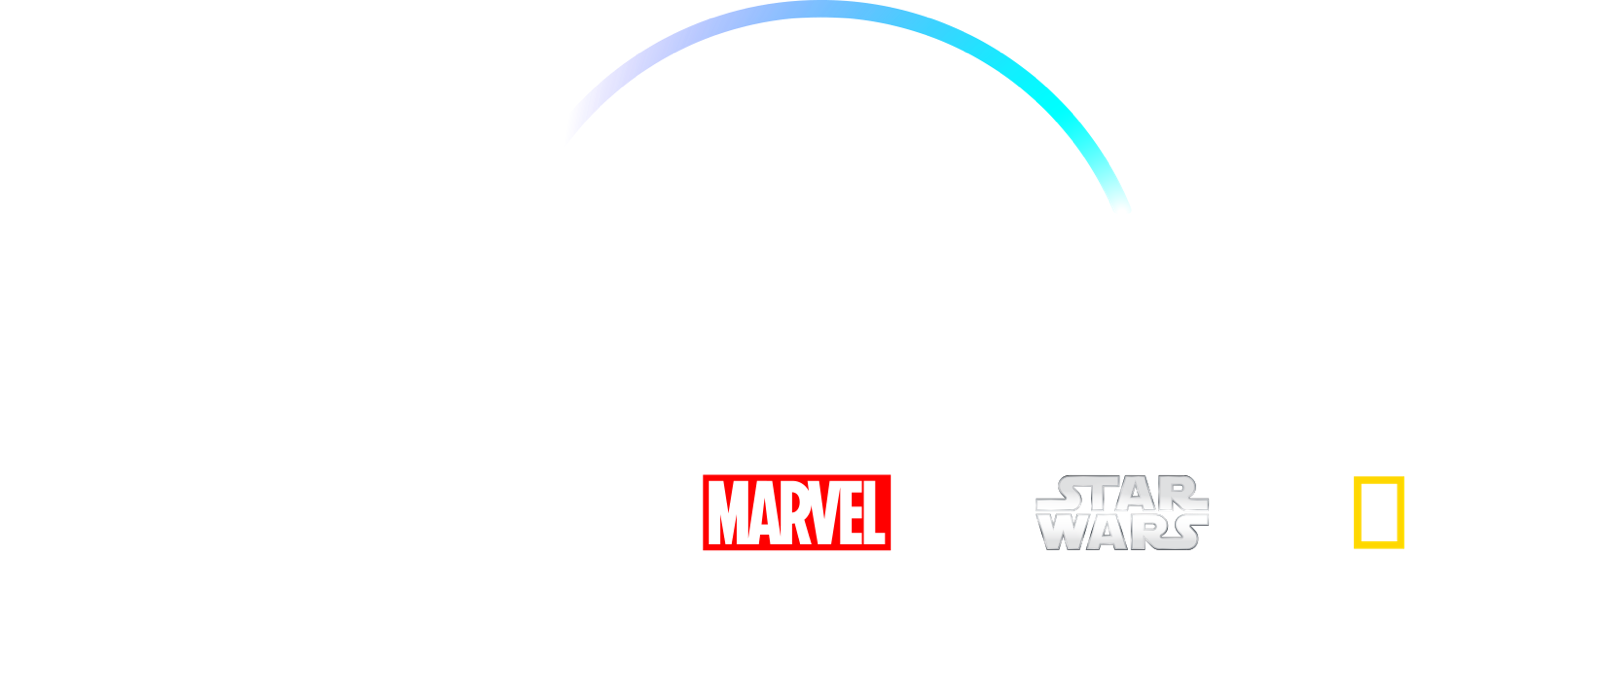 New disney plus logo. Disney+ лого. Disney Plus лого. Disney+ Original logo. Disney+ Originals логотипа.